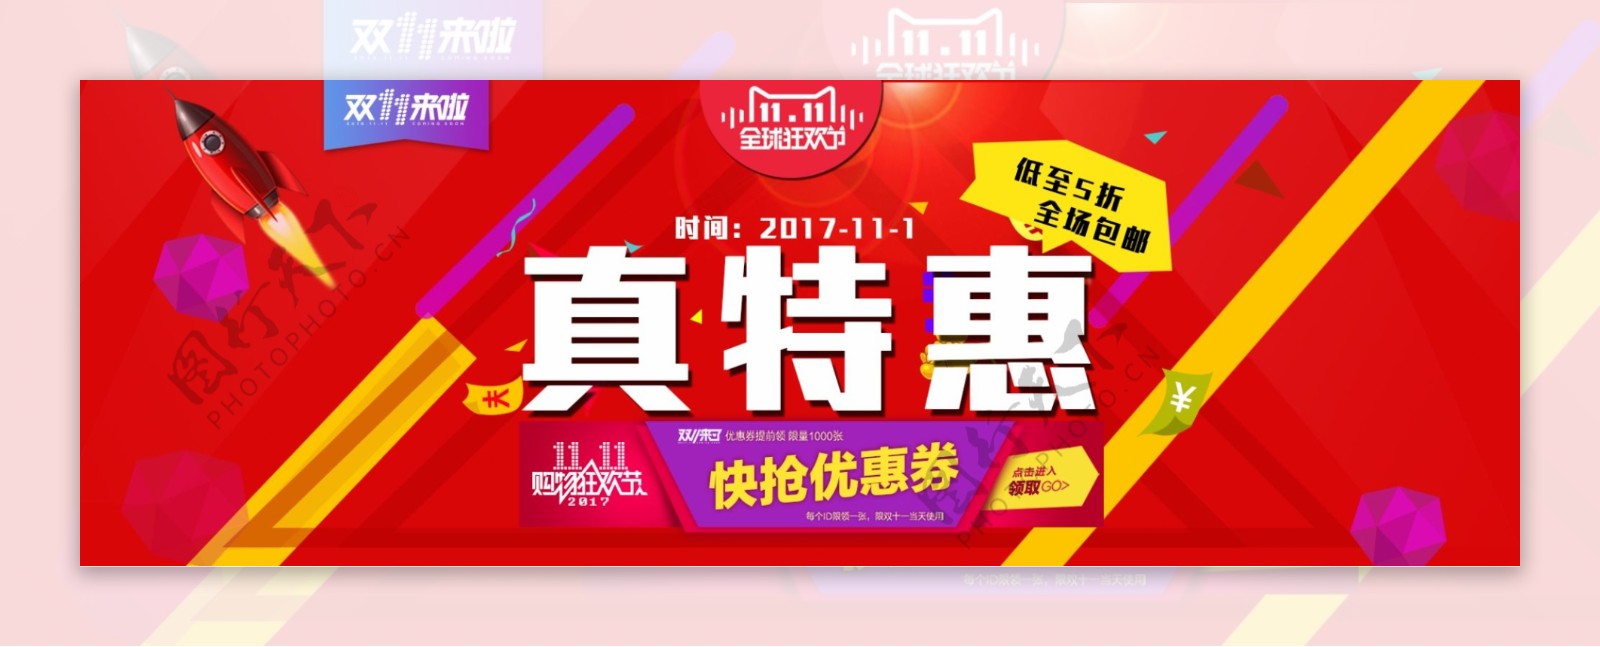 红色时尚双11购物狂欢节电商海报淘宝双十一banner